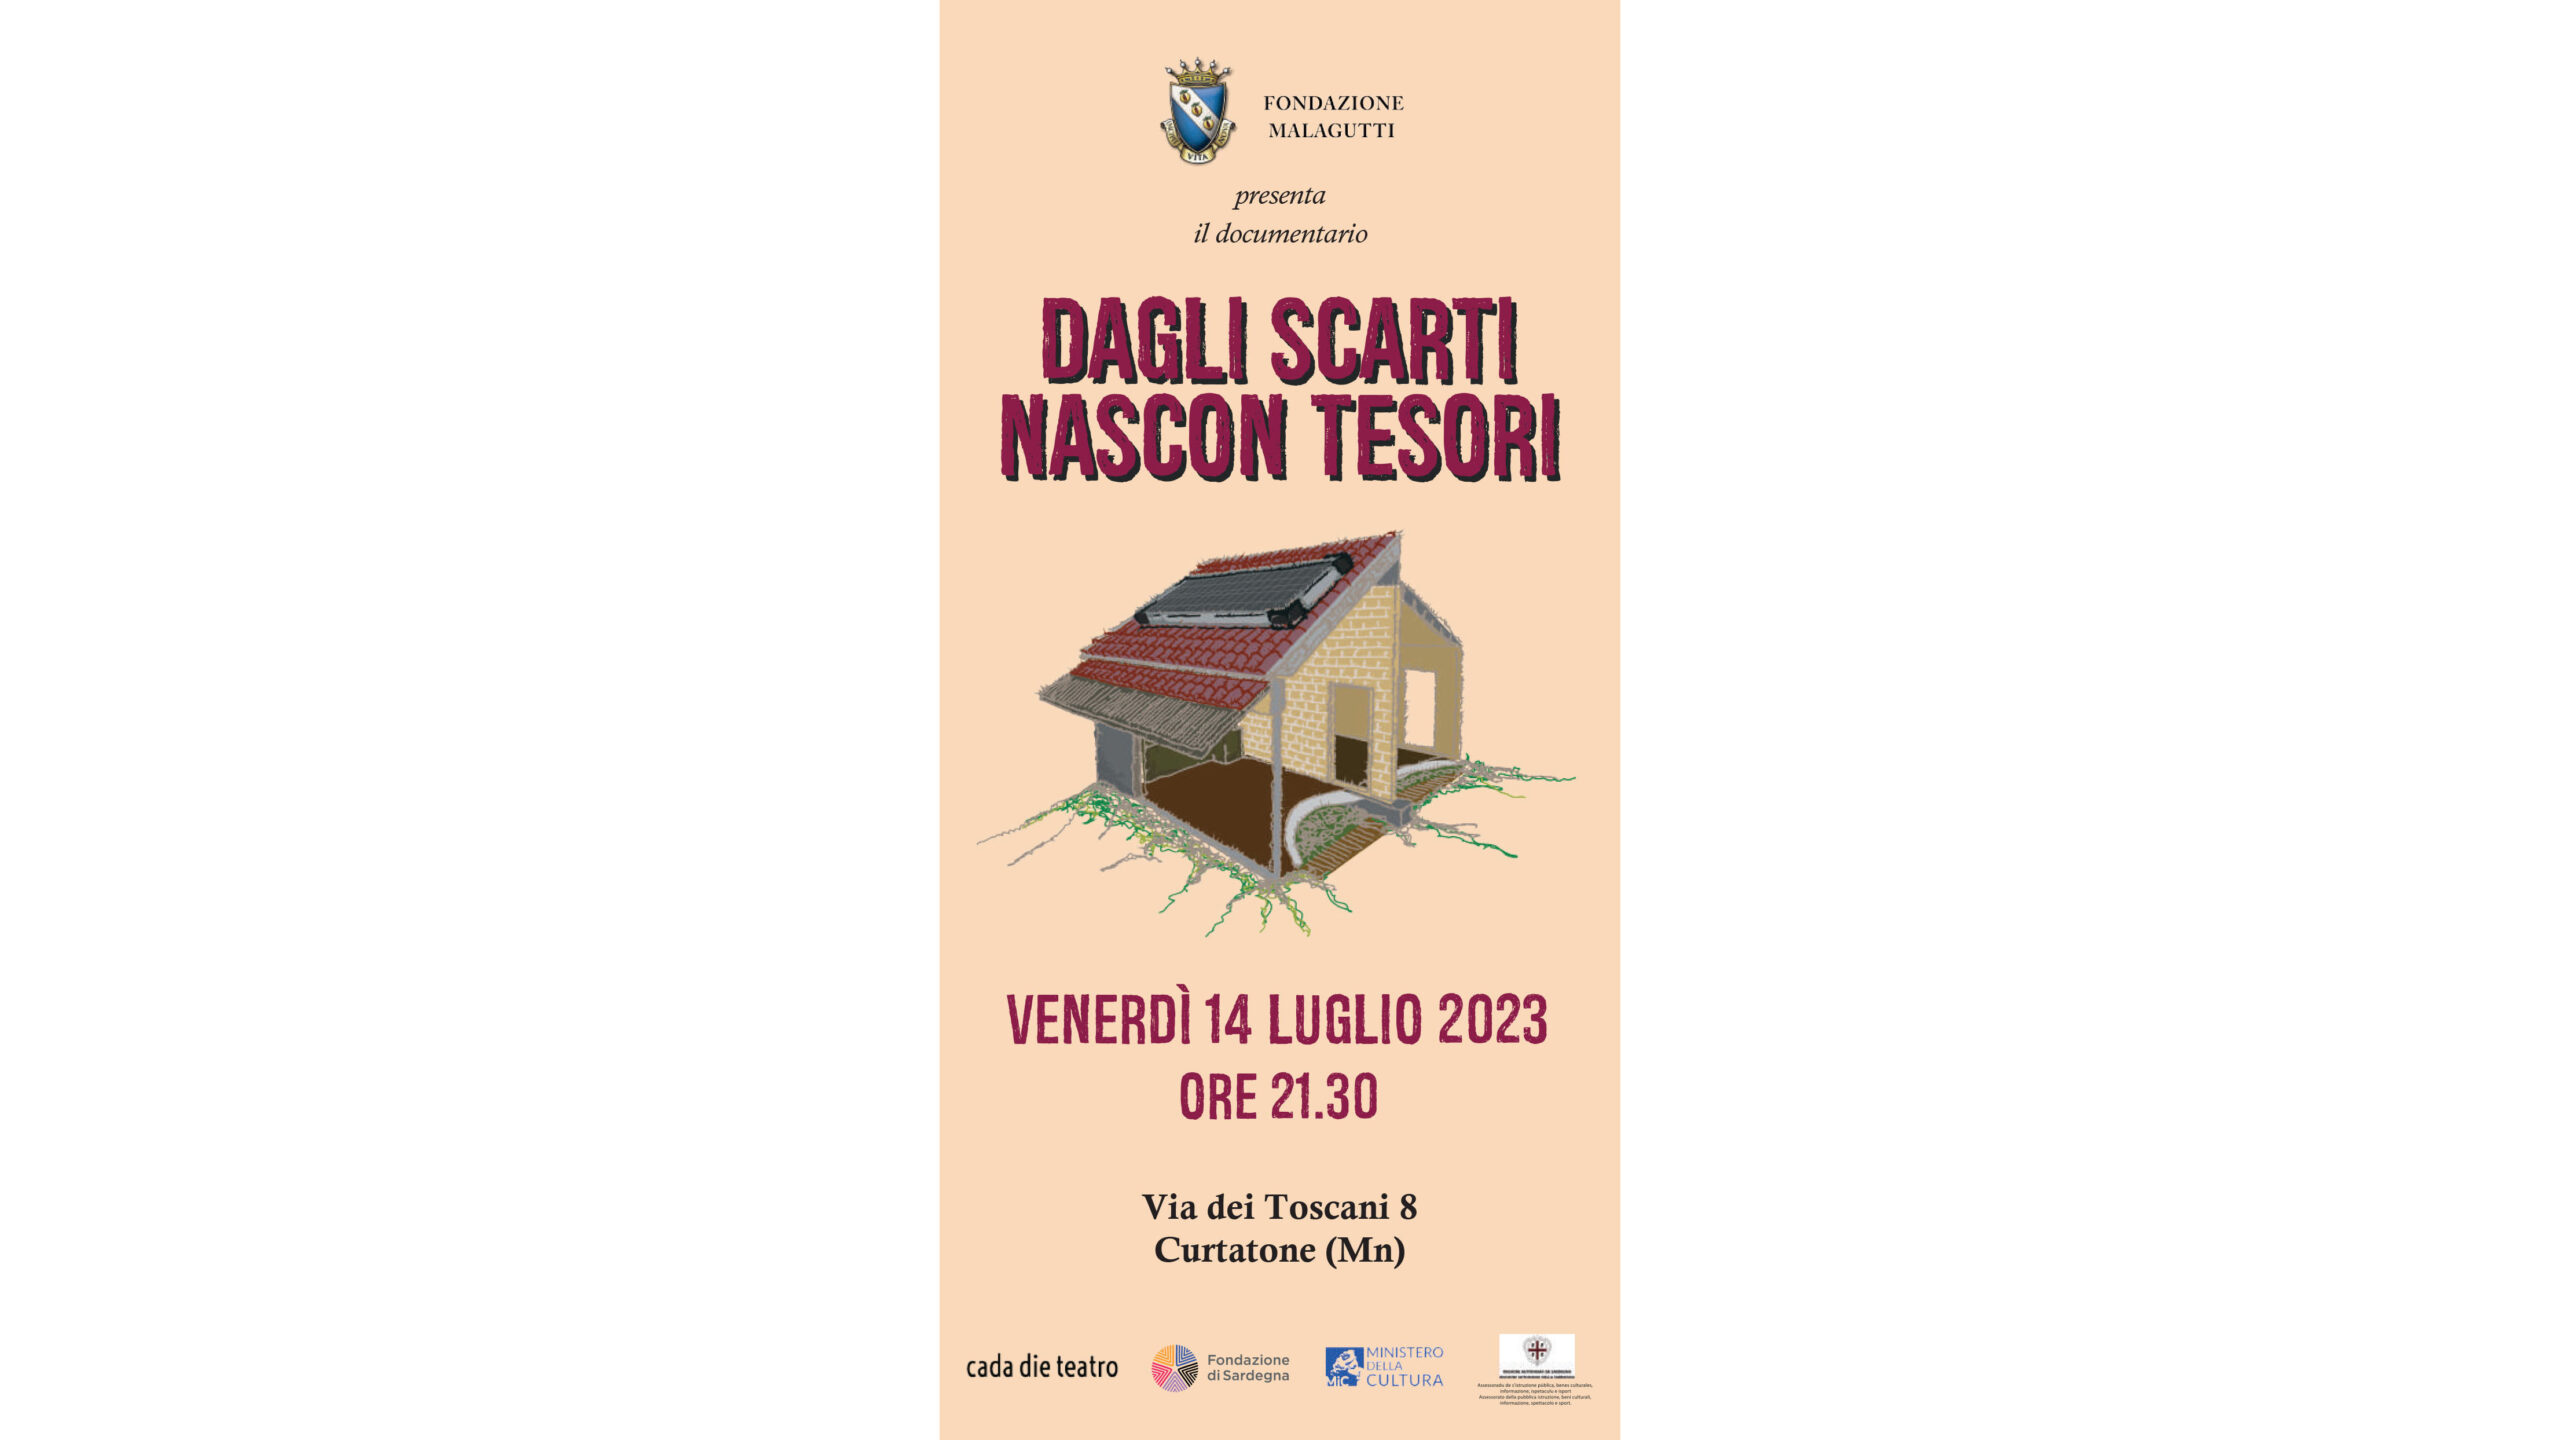 Presentazione del documentario “Dagli scarti nascon tesori” venerdì 14 luglio alle 21.30 – Via dei Toscani 8 Curtatone (MN)